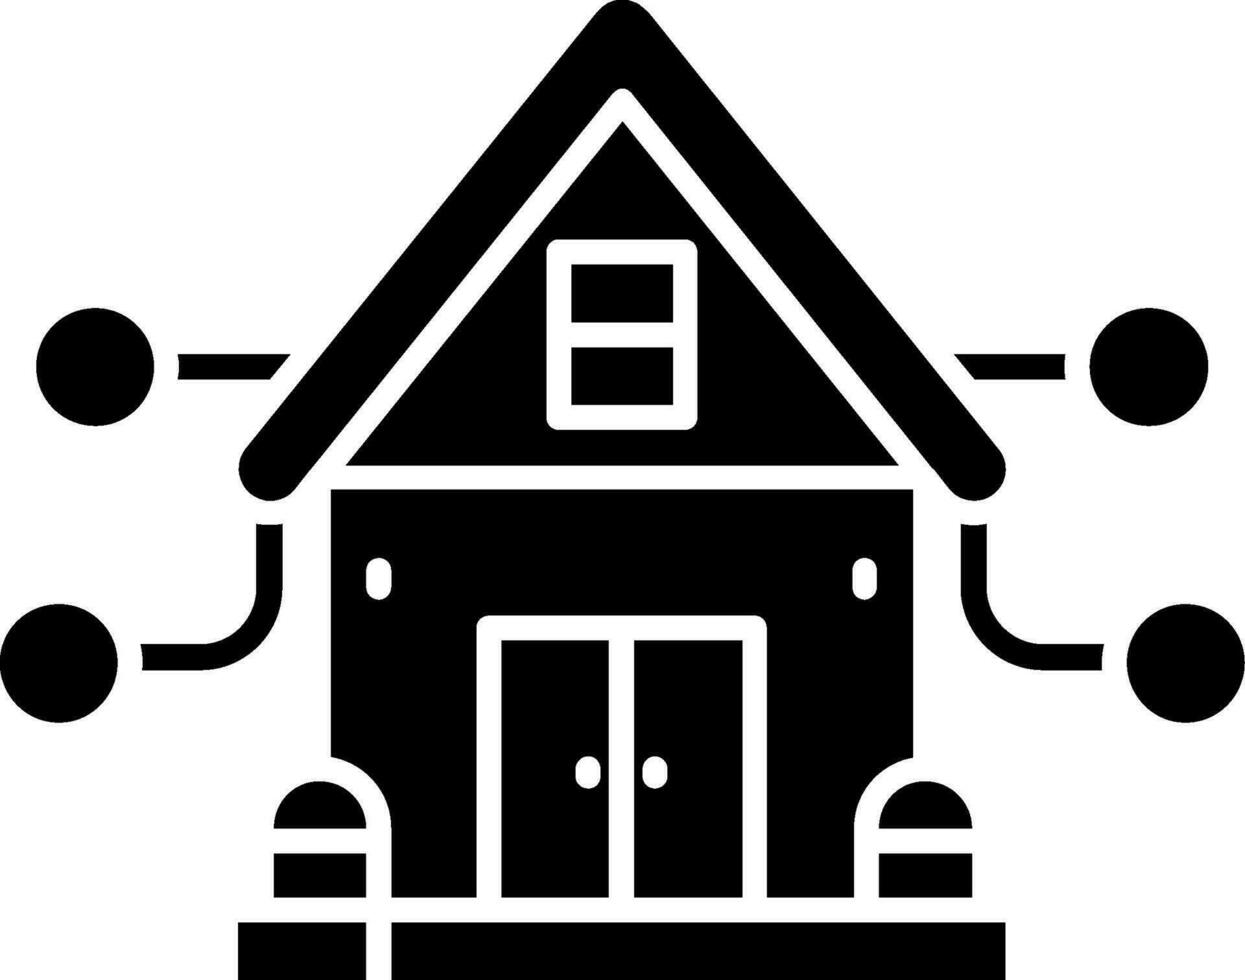 House Glyph Icon vector